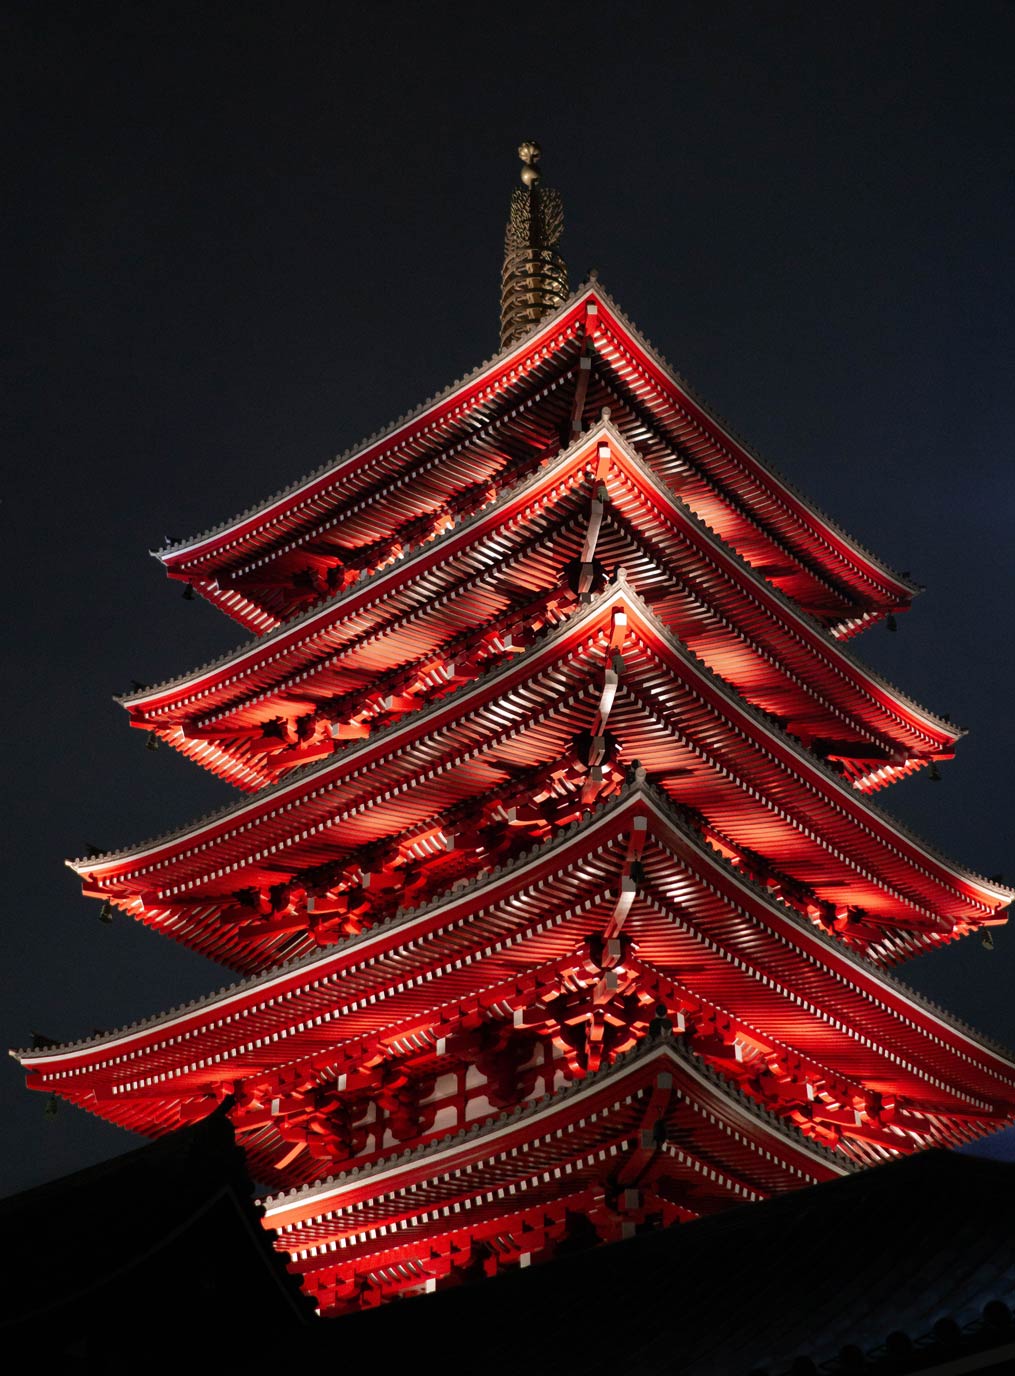 Asakusa Shrine in Asakusa, Taitō, Präfektur Tokio, Japan